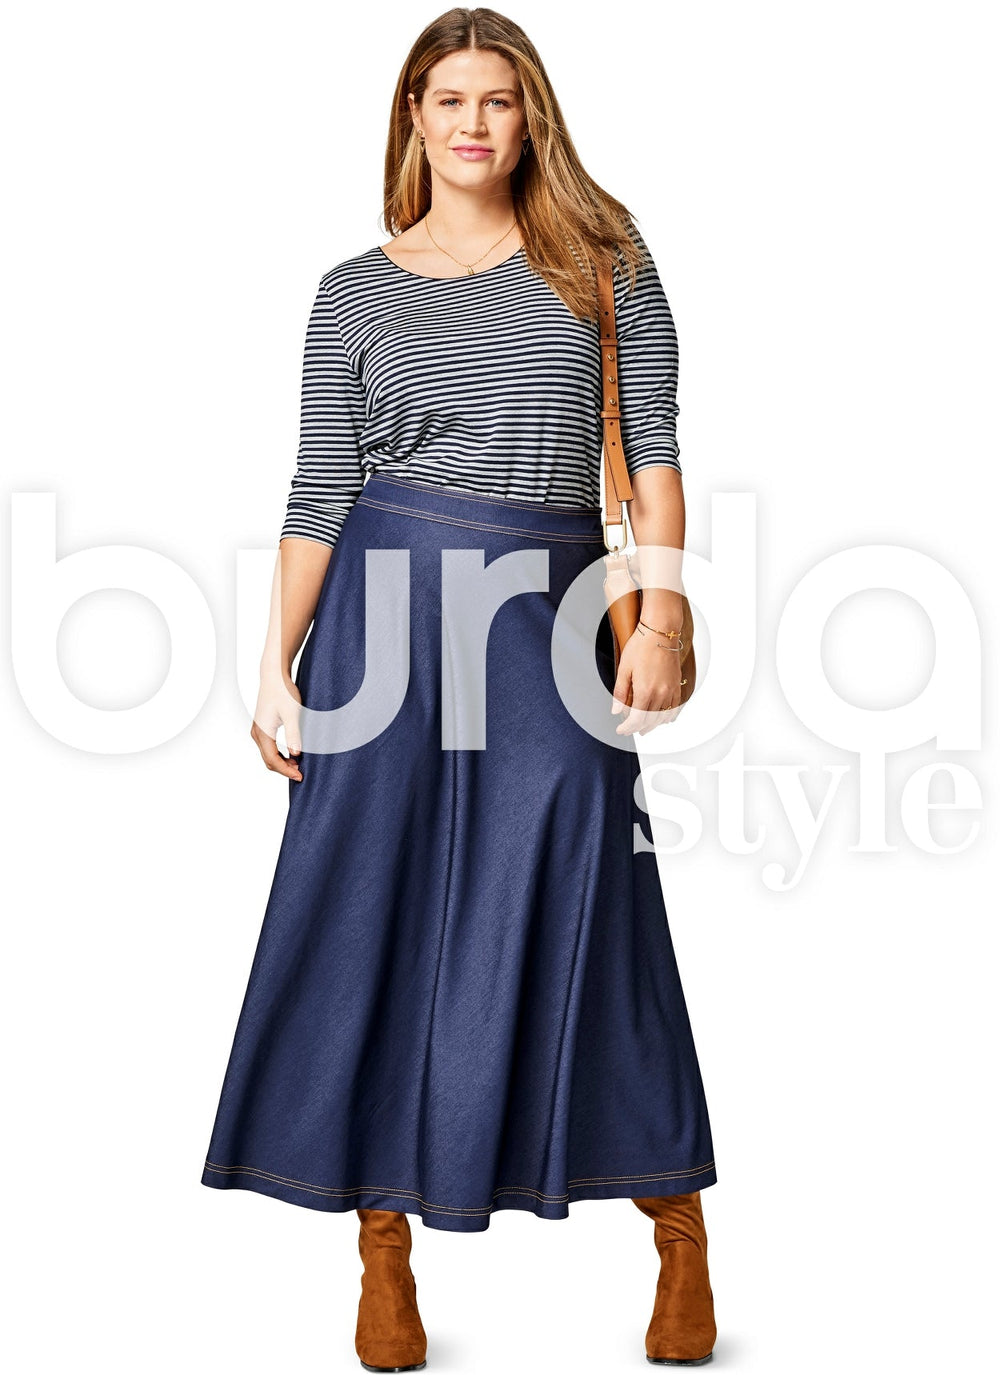 Hardtail Rolldown Waist Diamond Flare Skirt (Style VL-19) - Walmart.com